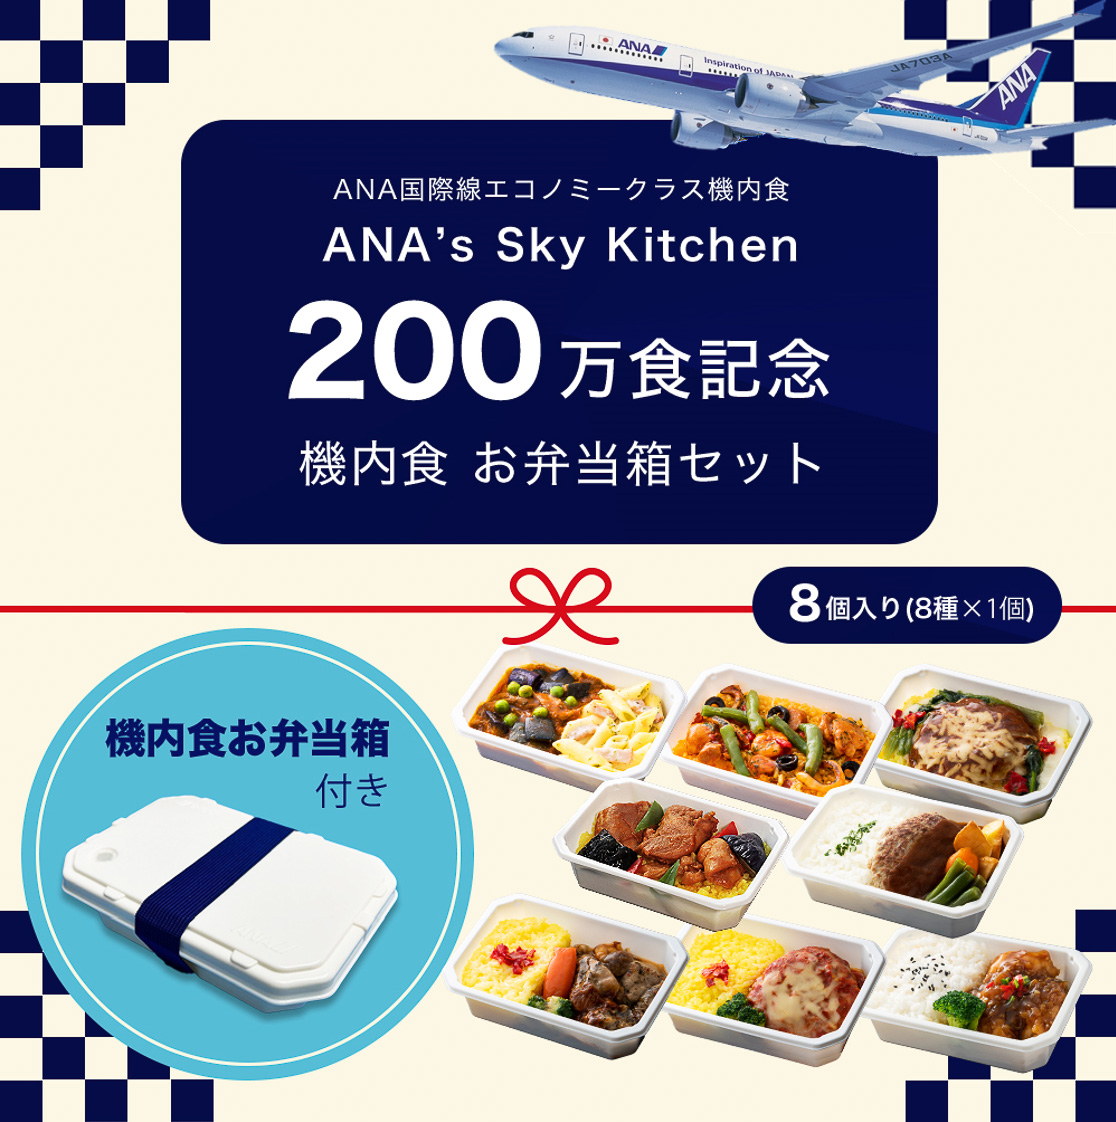 ANA、機内食通販200万食突破で記念セット。耐冷・電子レンジ可・食洗機 